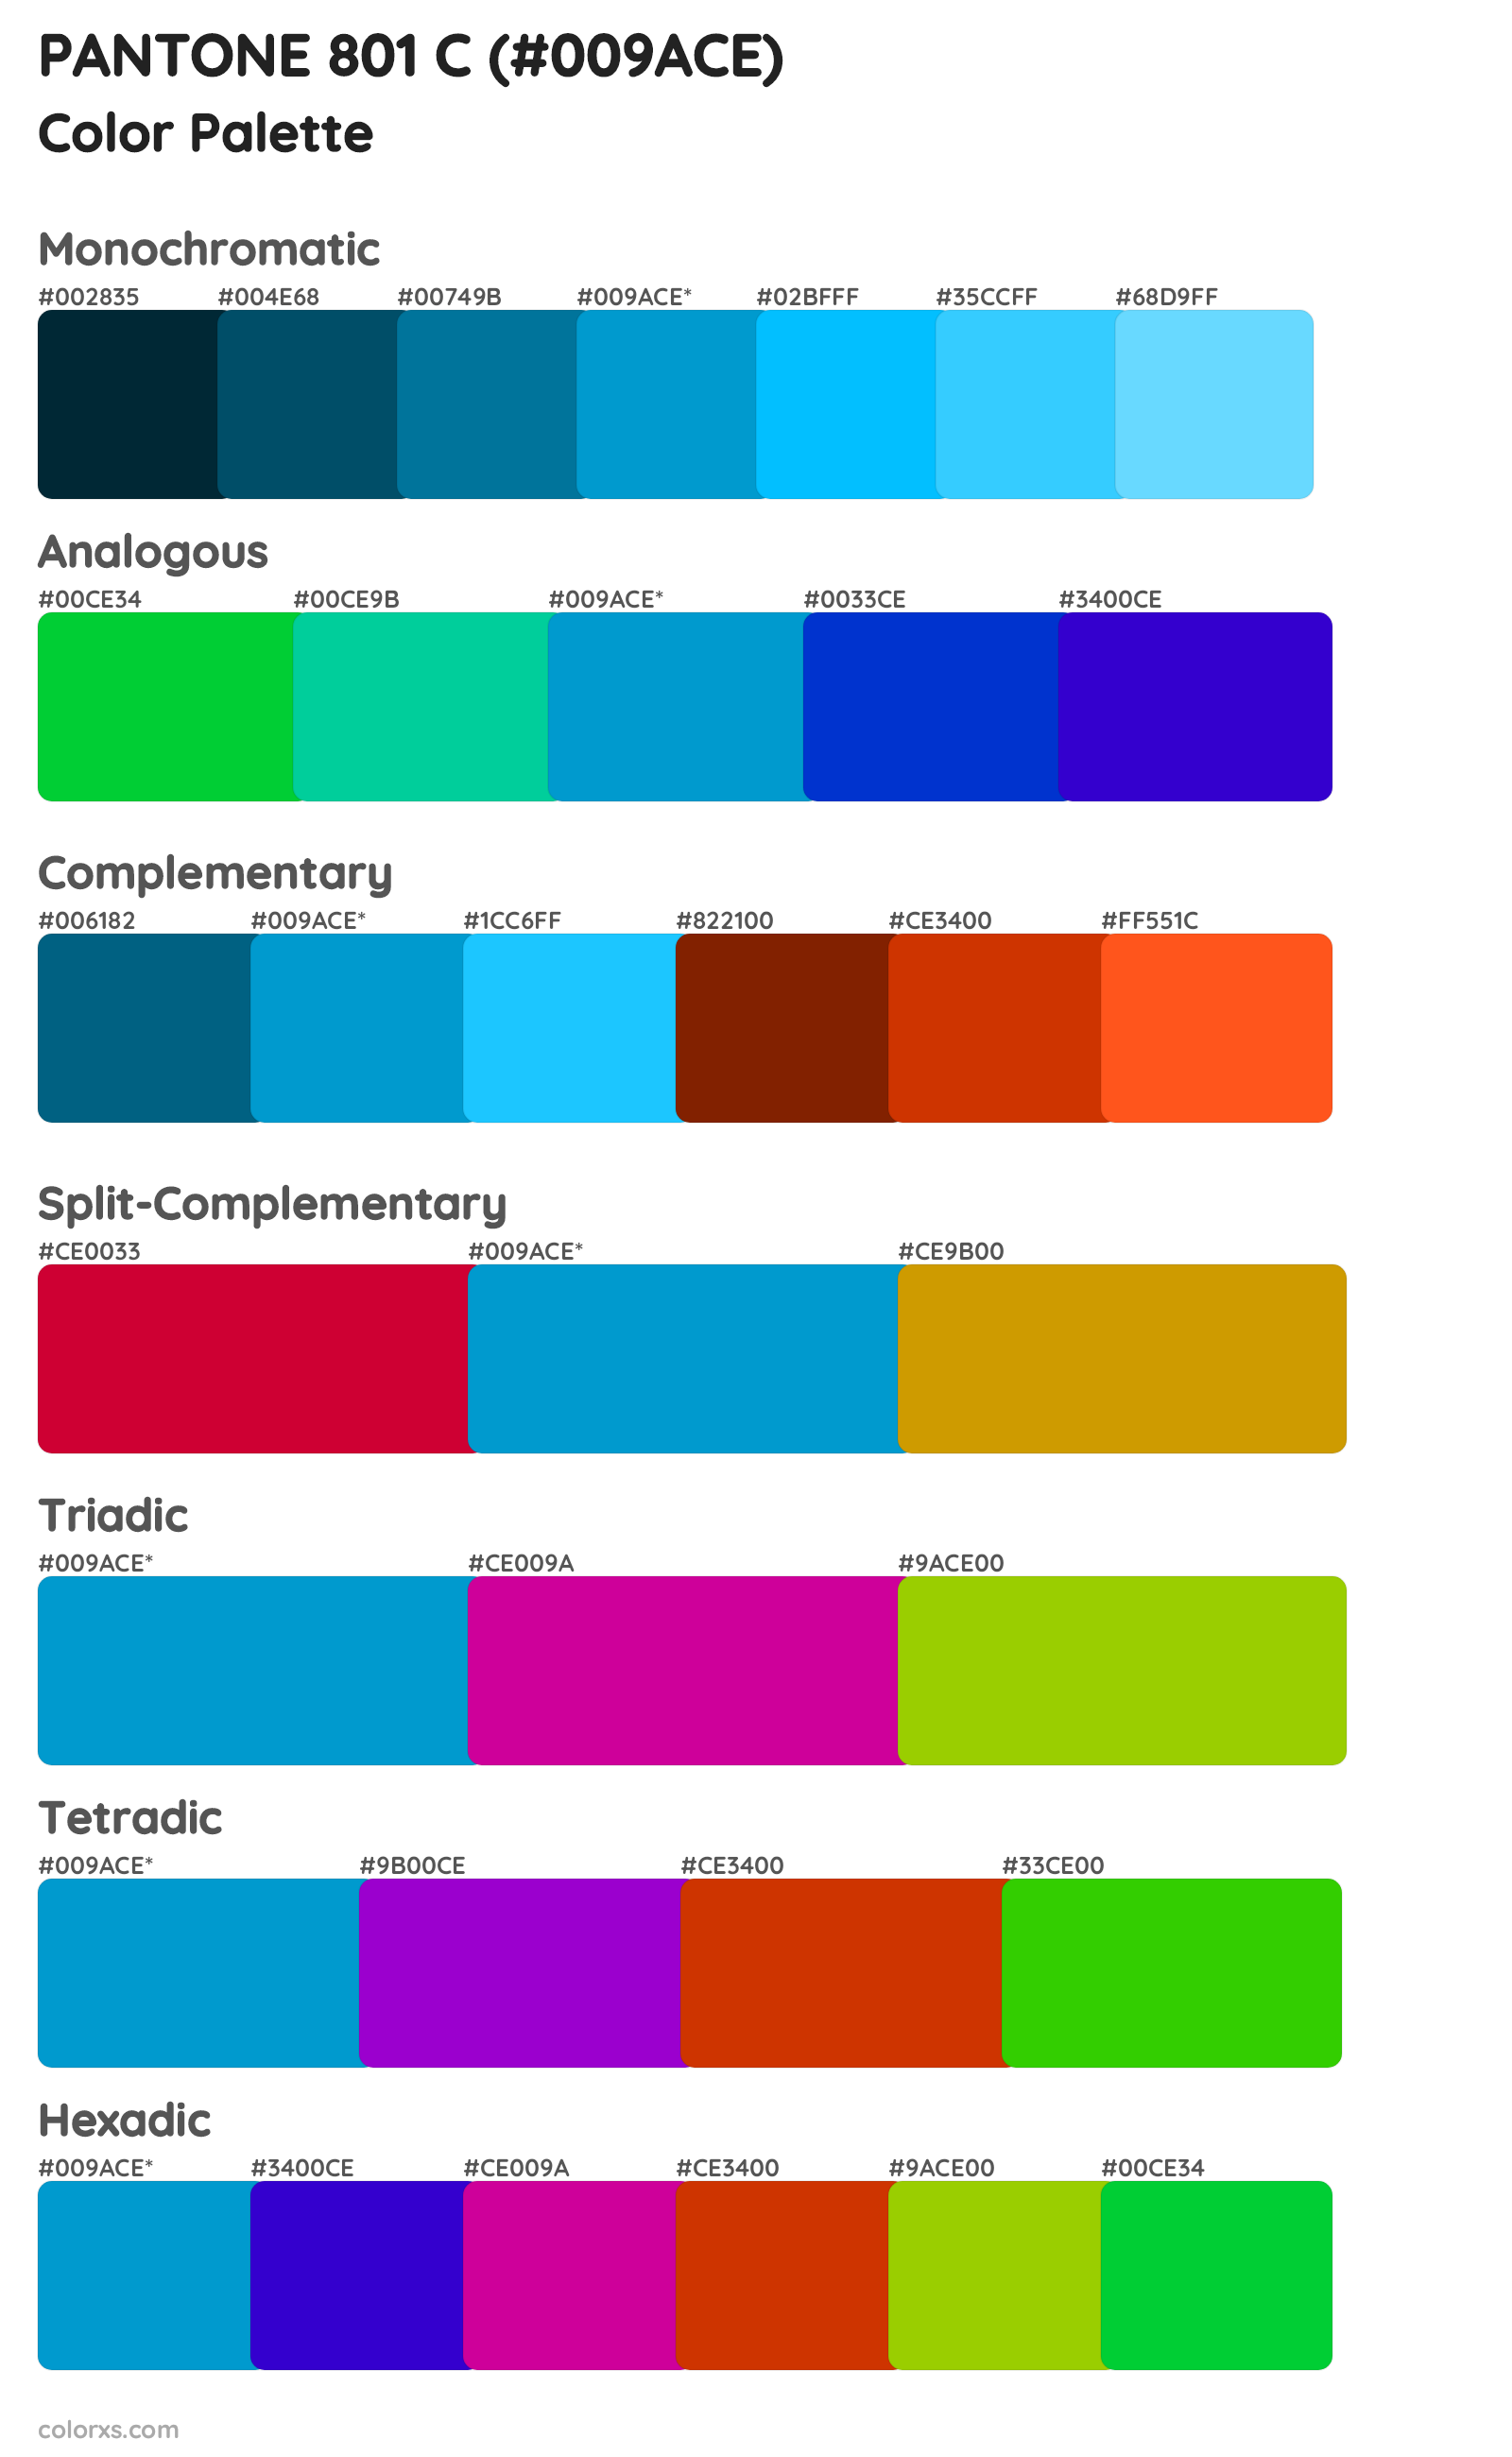 PANTONE 801 C Color Scheme Palettes